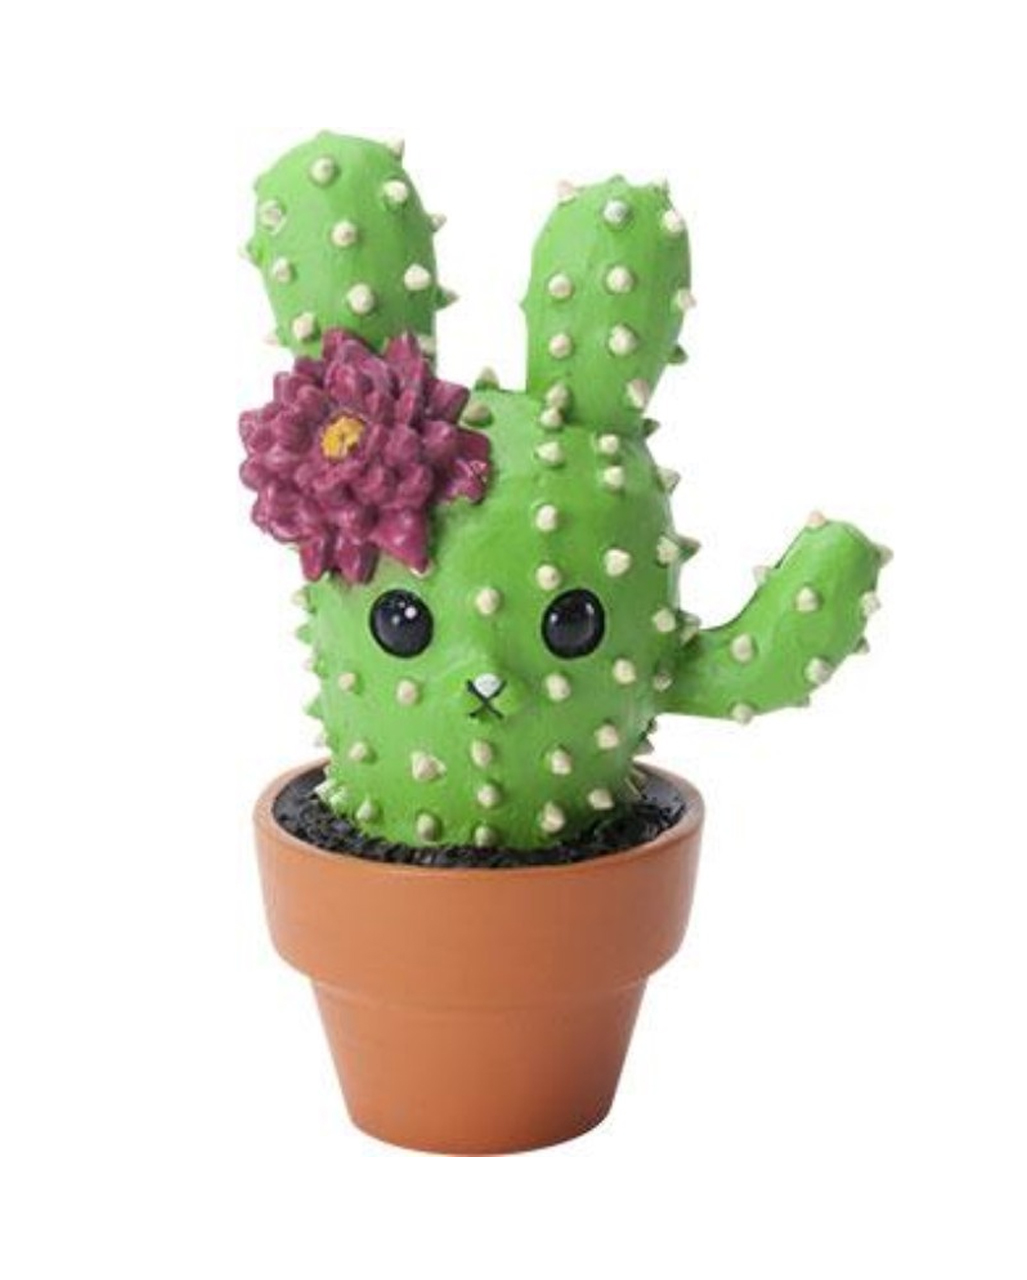 https://inst-2.cdn.shockers.de/hs_cdn/out/pictures/master/product/1/prickles-haeschen-kaktus-figur-prickles-cactus-figurine-halloween-und-gothic-geschenkartikel-und-deko-53542.jpg